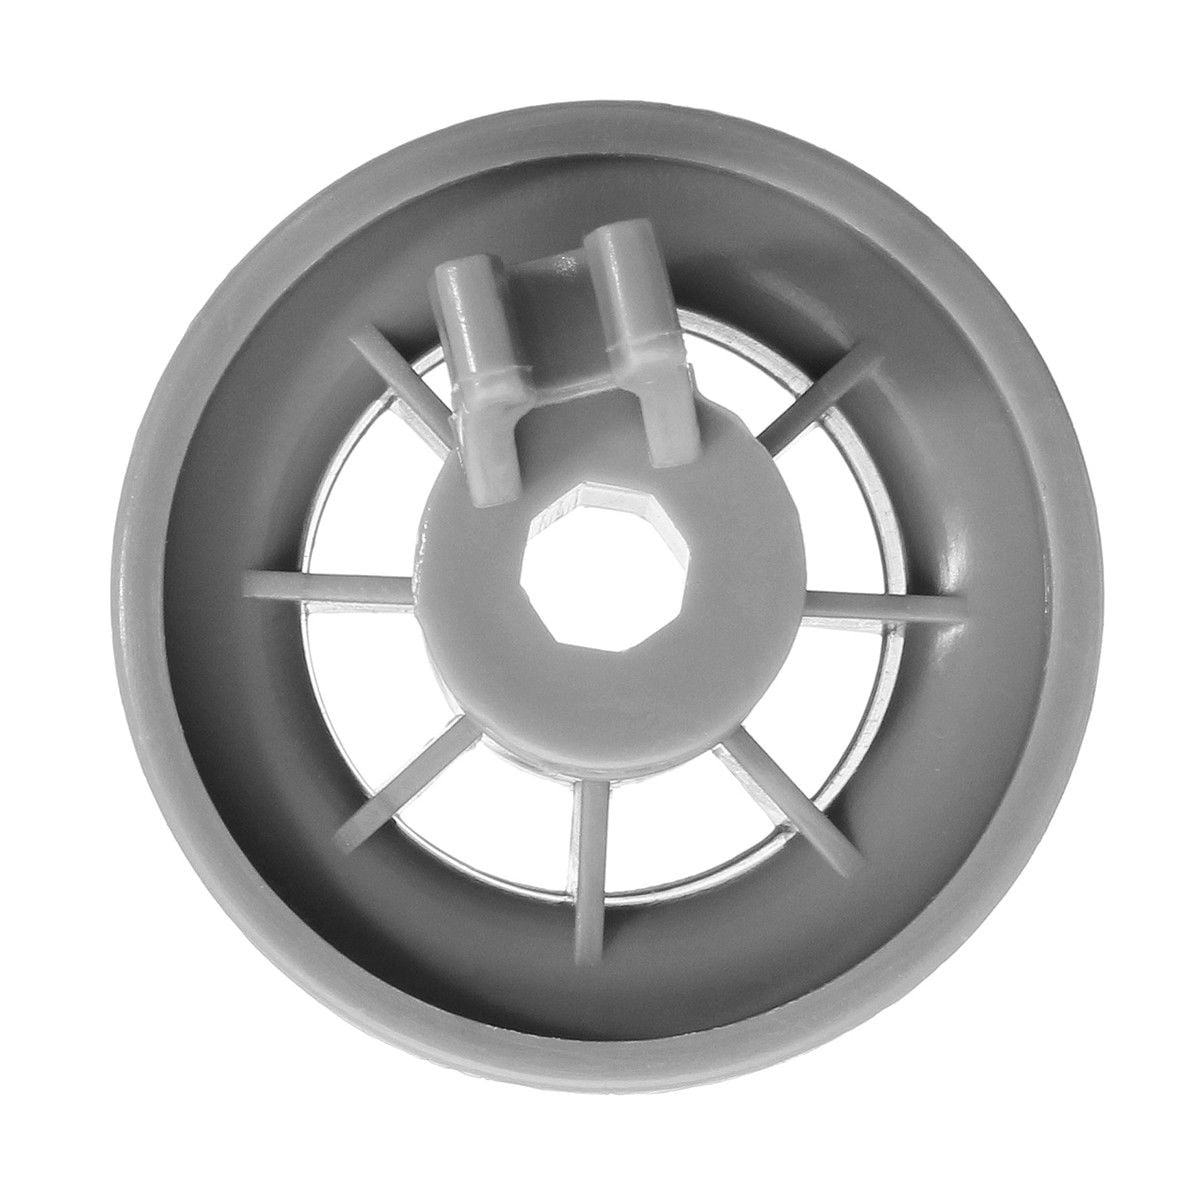 Bosch Neff slimline dishwasher top upper basket wheels X 4 